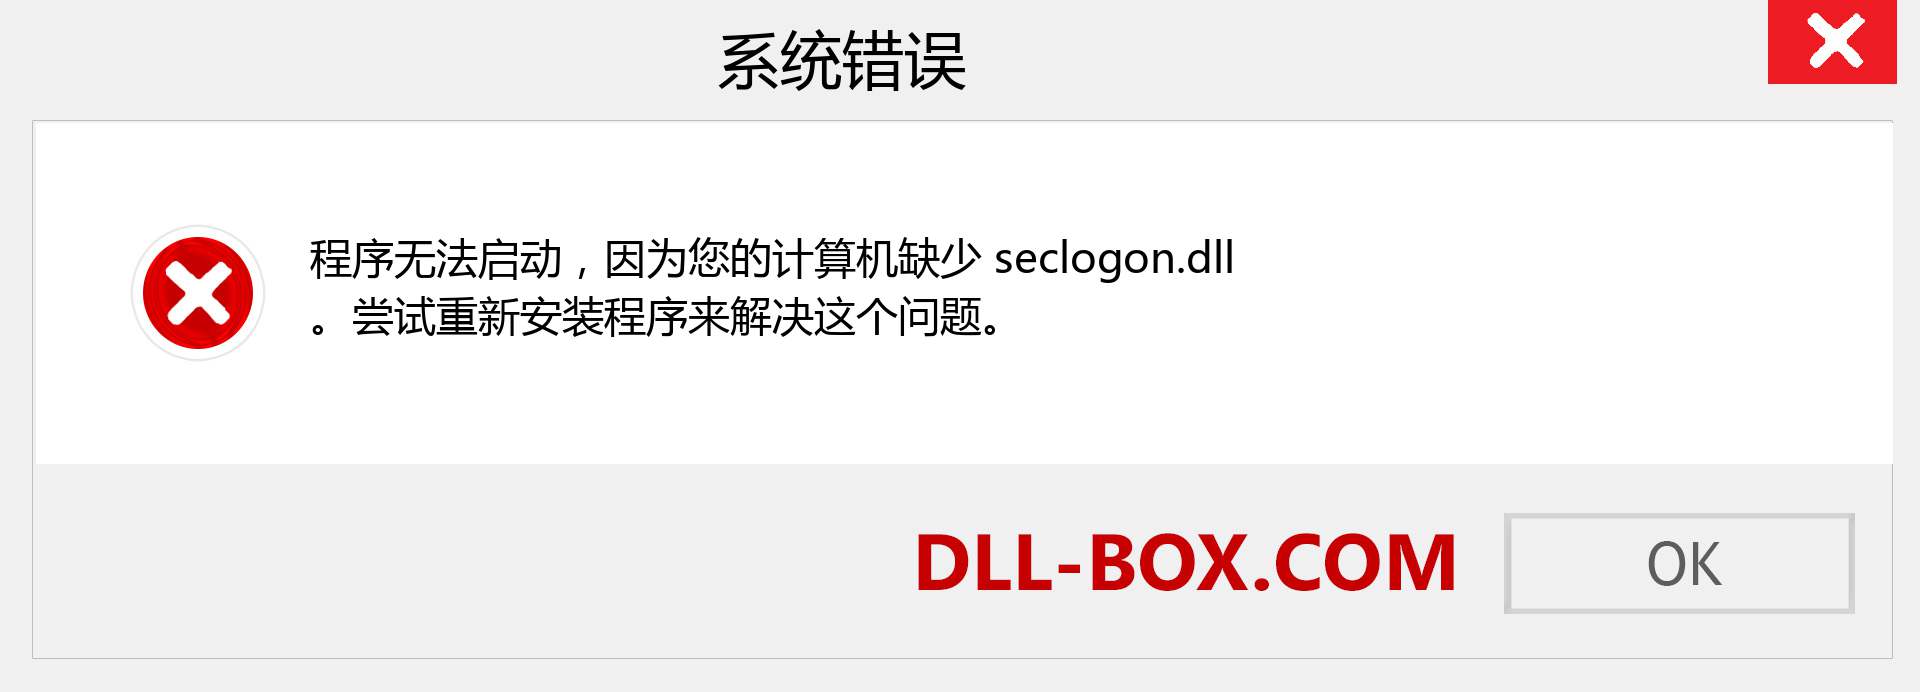 seclogon.dll 文件丢失？。 适用于 Windows 7、8、10 的下载 - 修复 Windows、照片、图像上的 seclogon dll 丢失错误